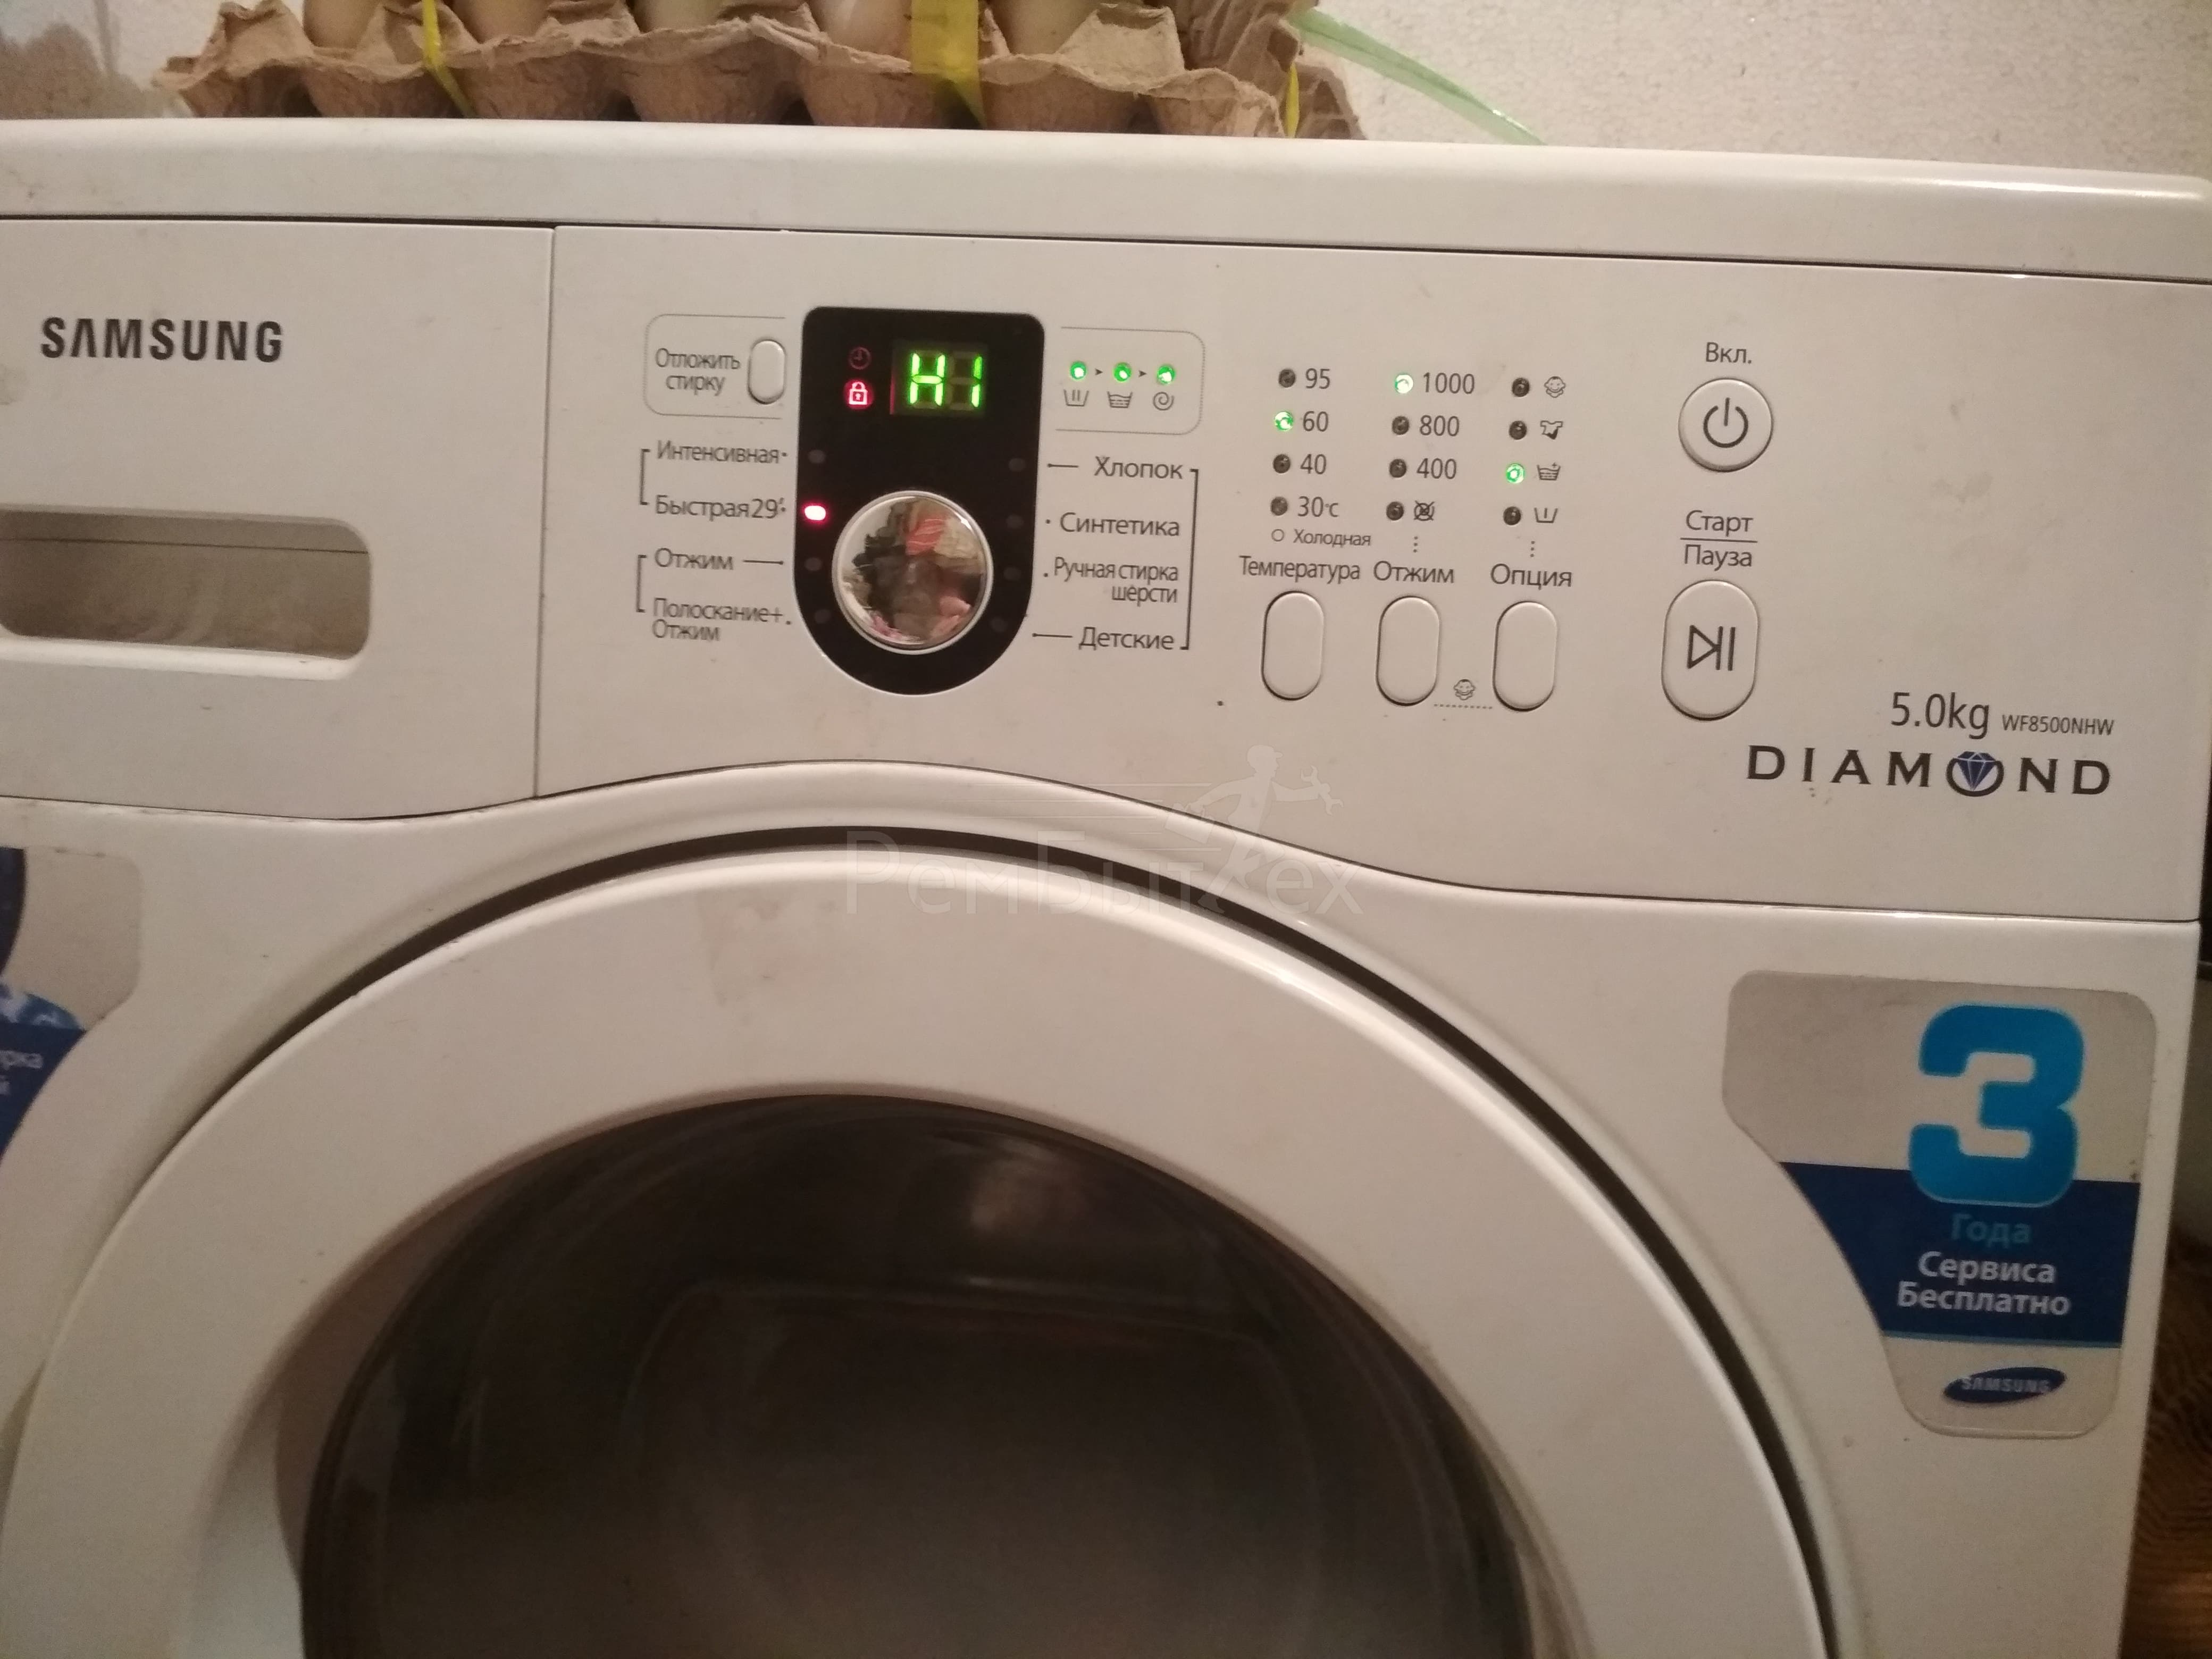 Ошибка h1 стиральной машины самсунг (samsung): что означает код, который выдает стиралка, как устранить неполадку?